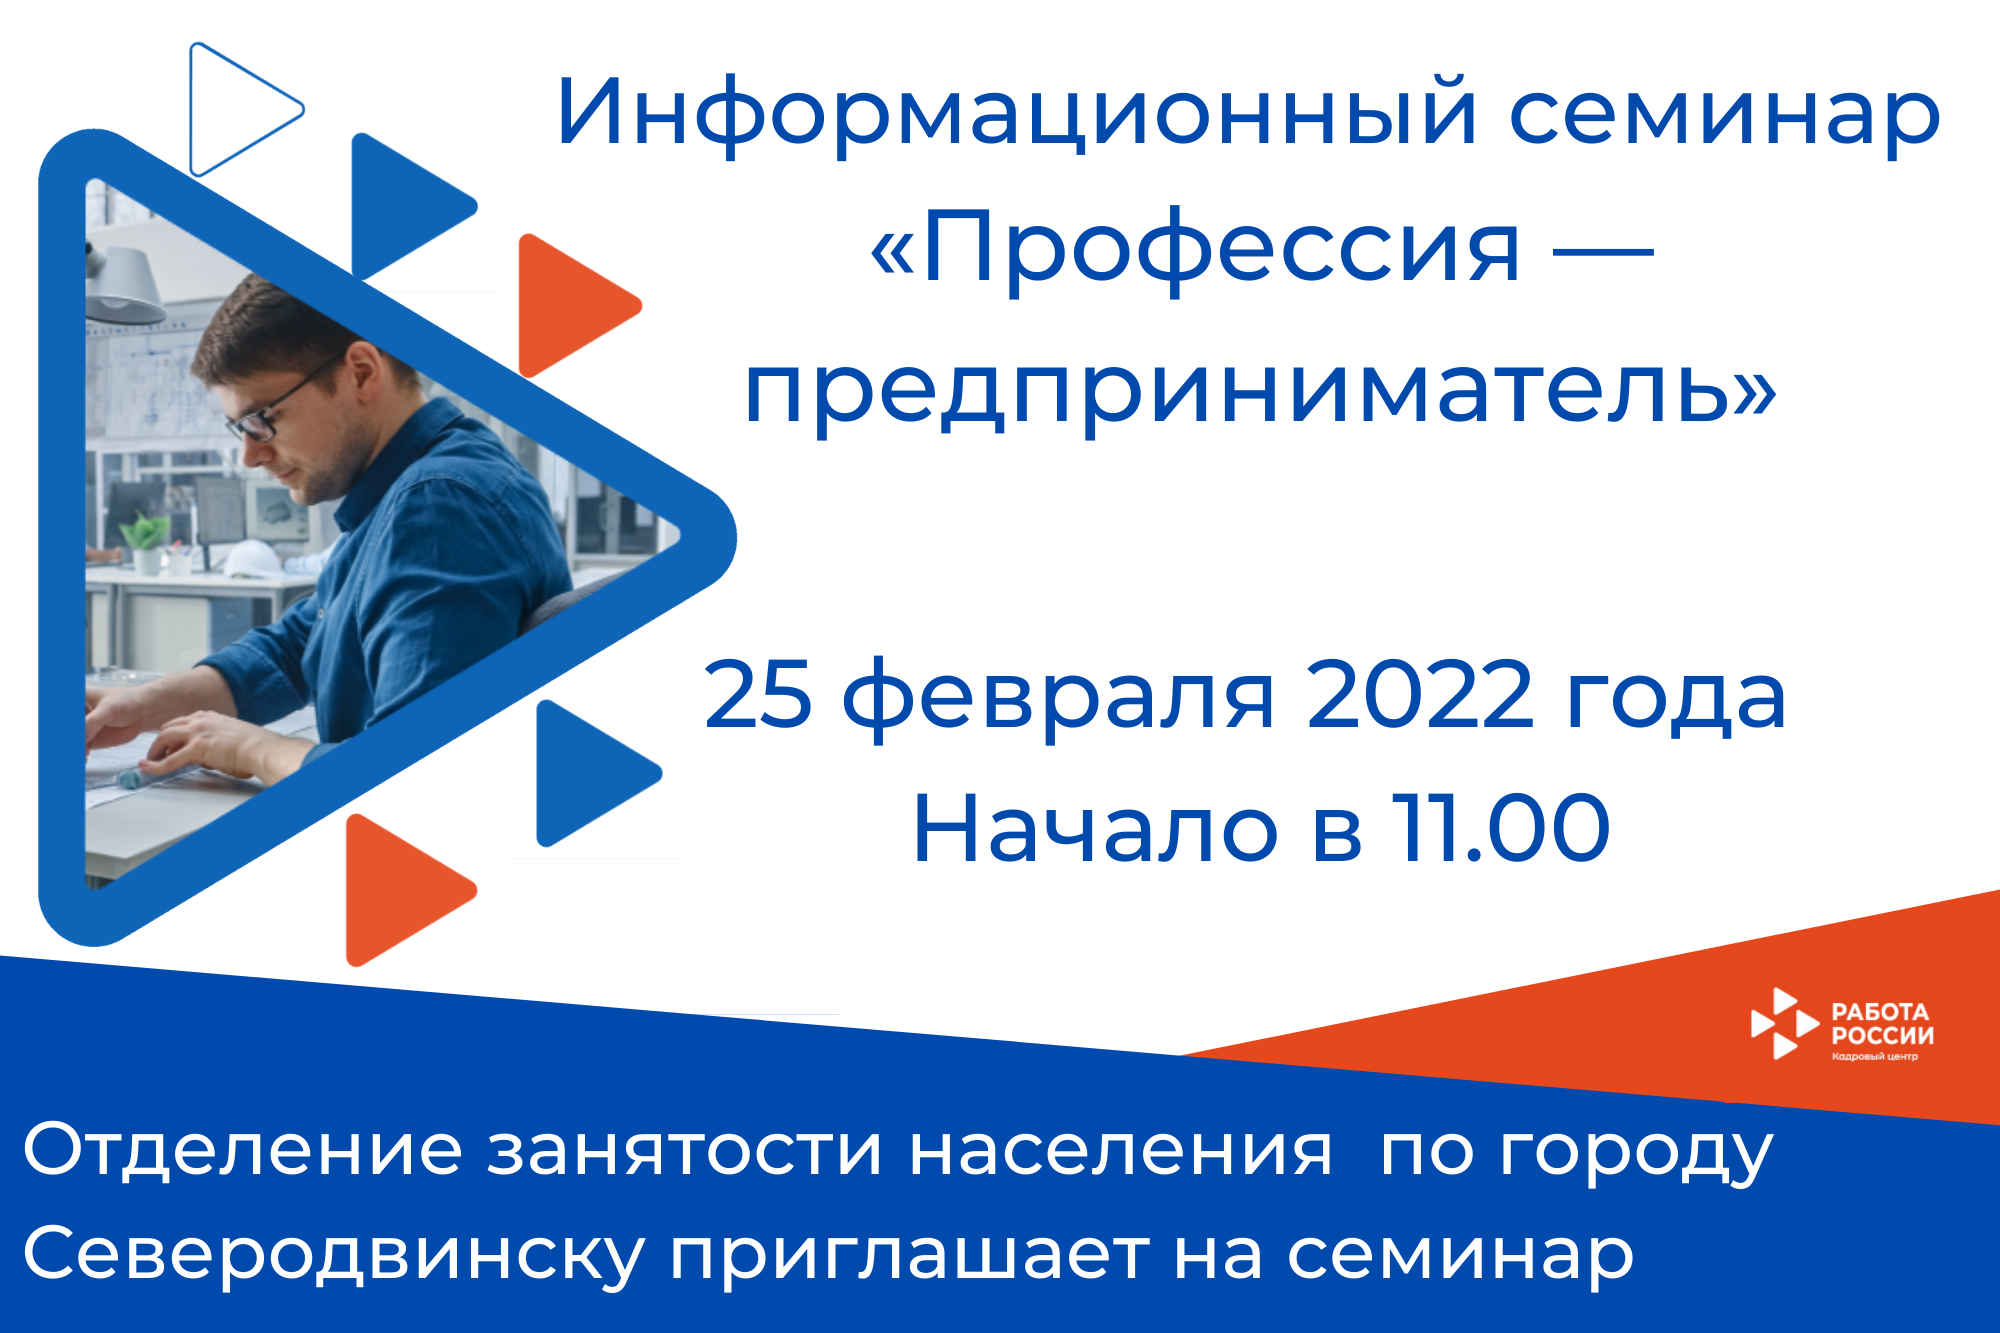 Отделение занятости по городу Северодвинску приглашает на семинар «Профессия — предприниматель»